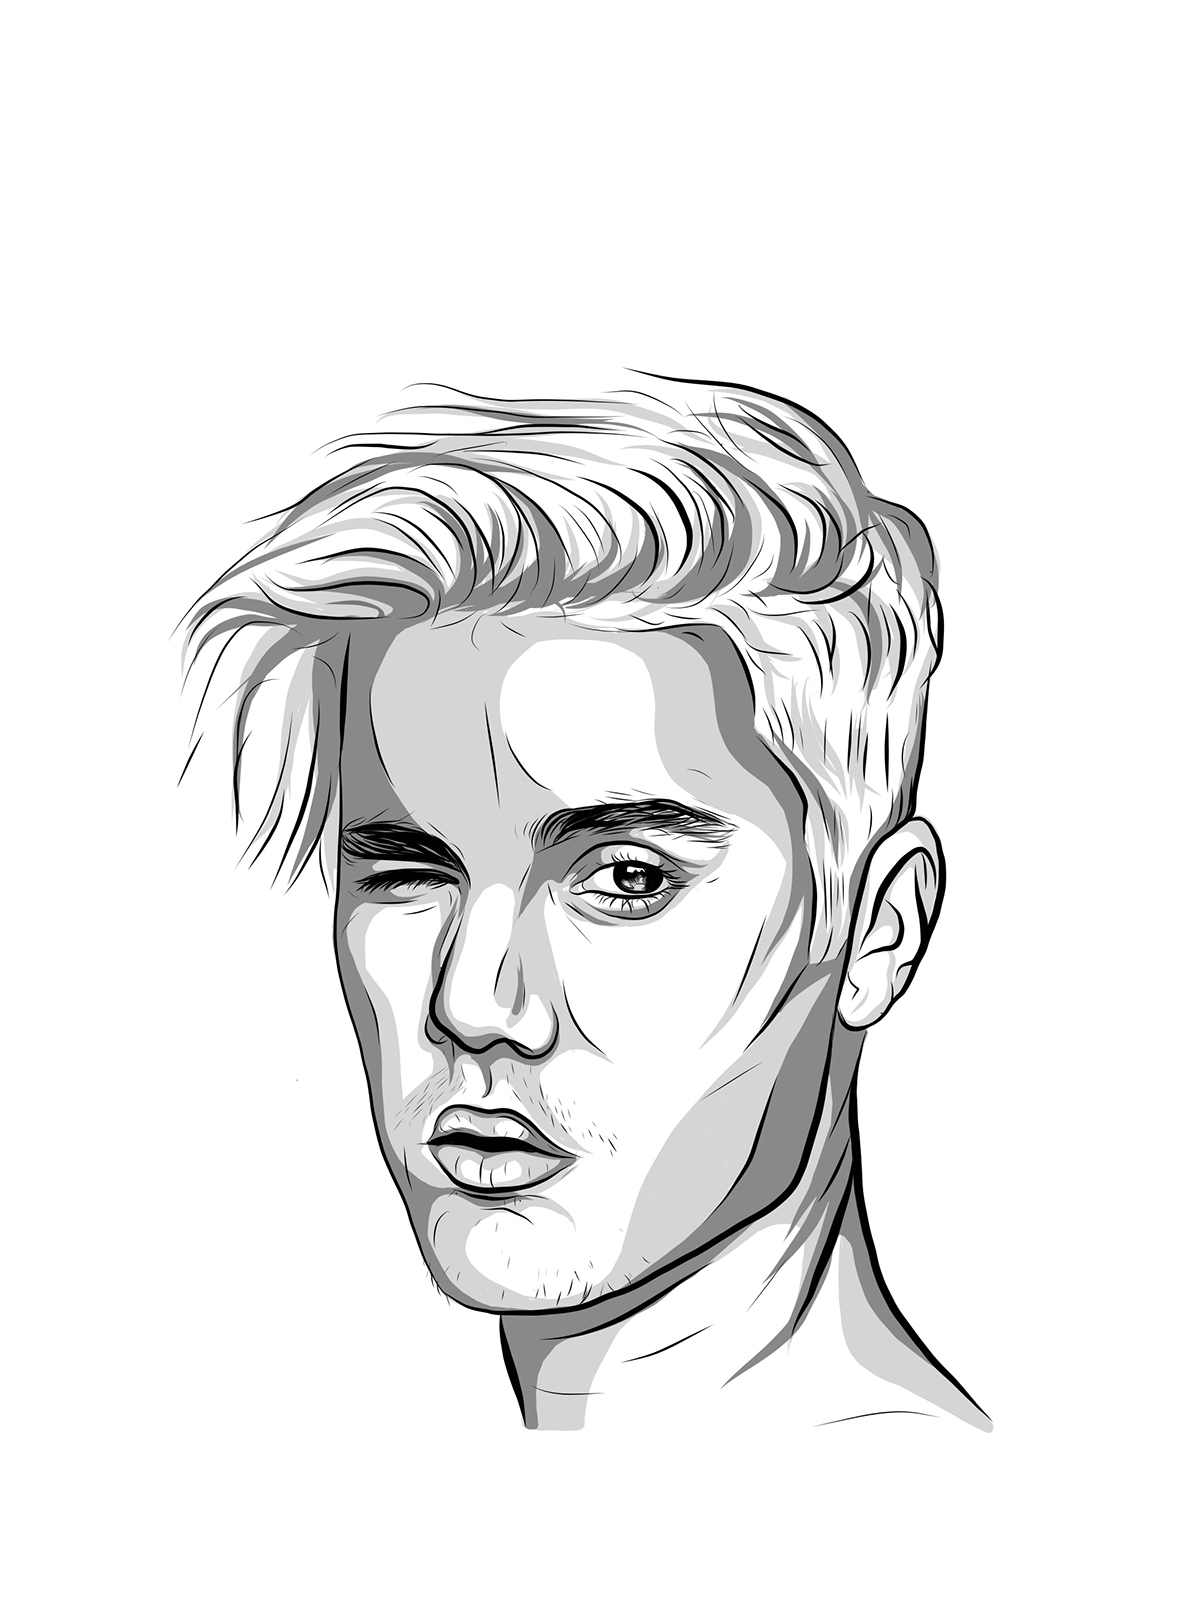 Justin Bieber Illustration on Behance